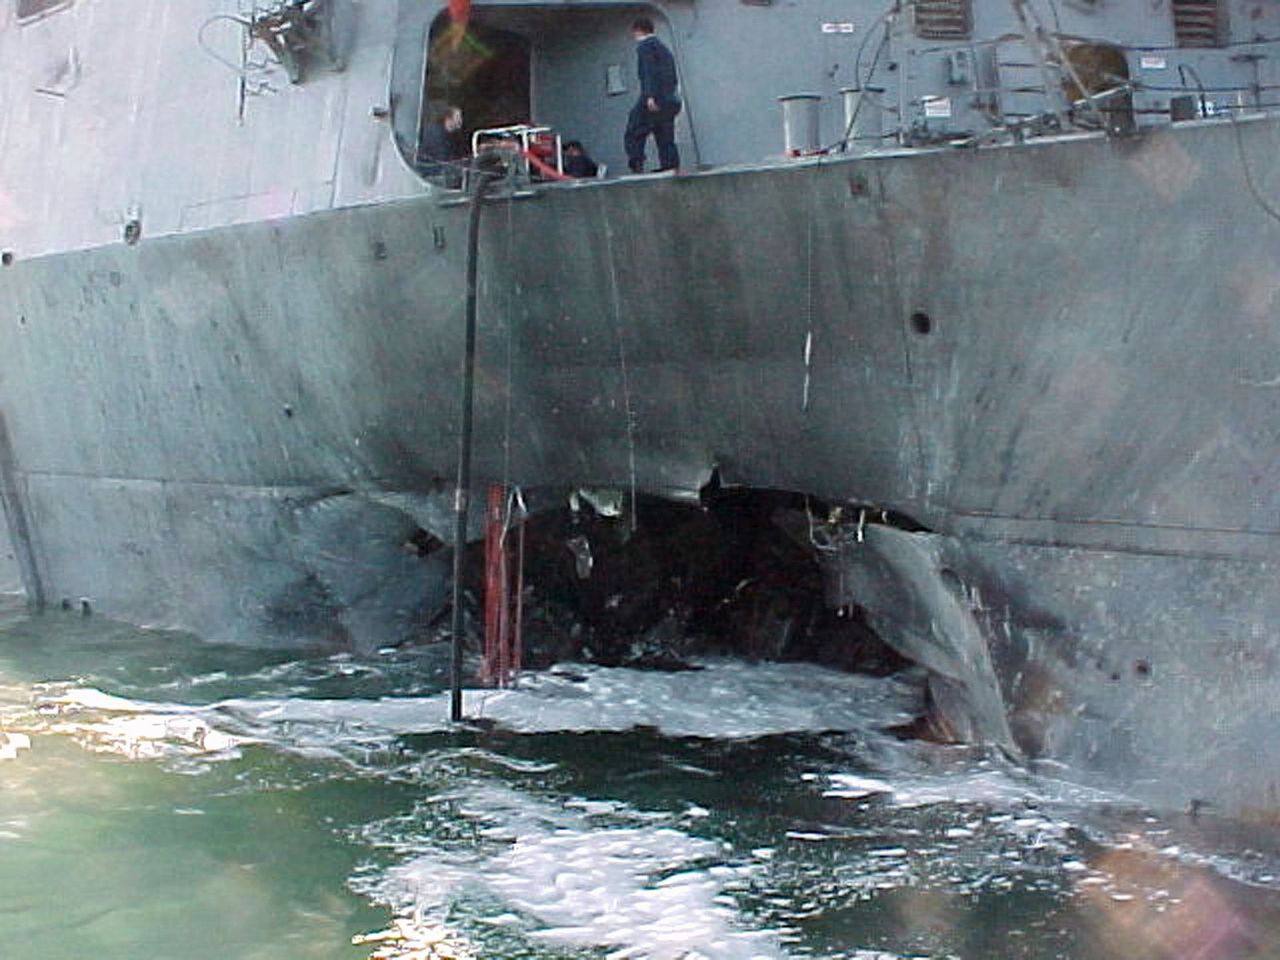 De zijkant van het Amerikaanse oorlogsschip USS Cole in haven van Aden, na de zelfmoordaanslag opgeëist door al-Qaeda op 12 oktober 2000.